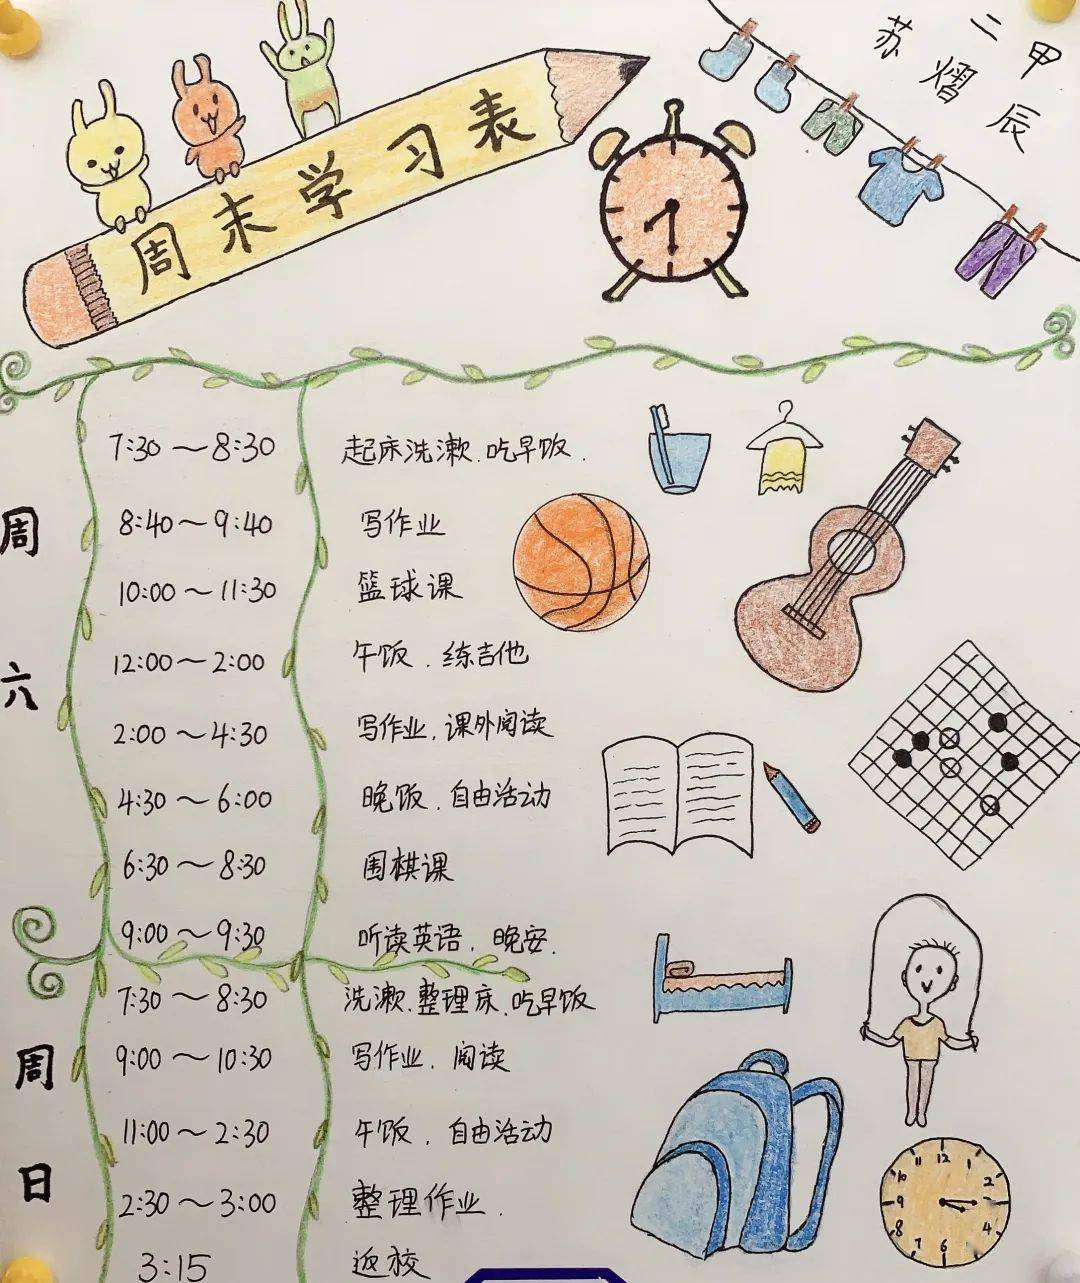 二年级孩子作息时间表图片